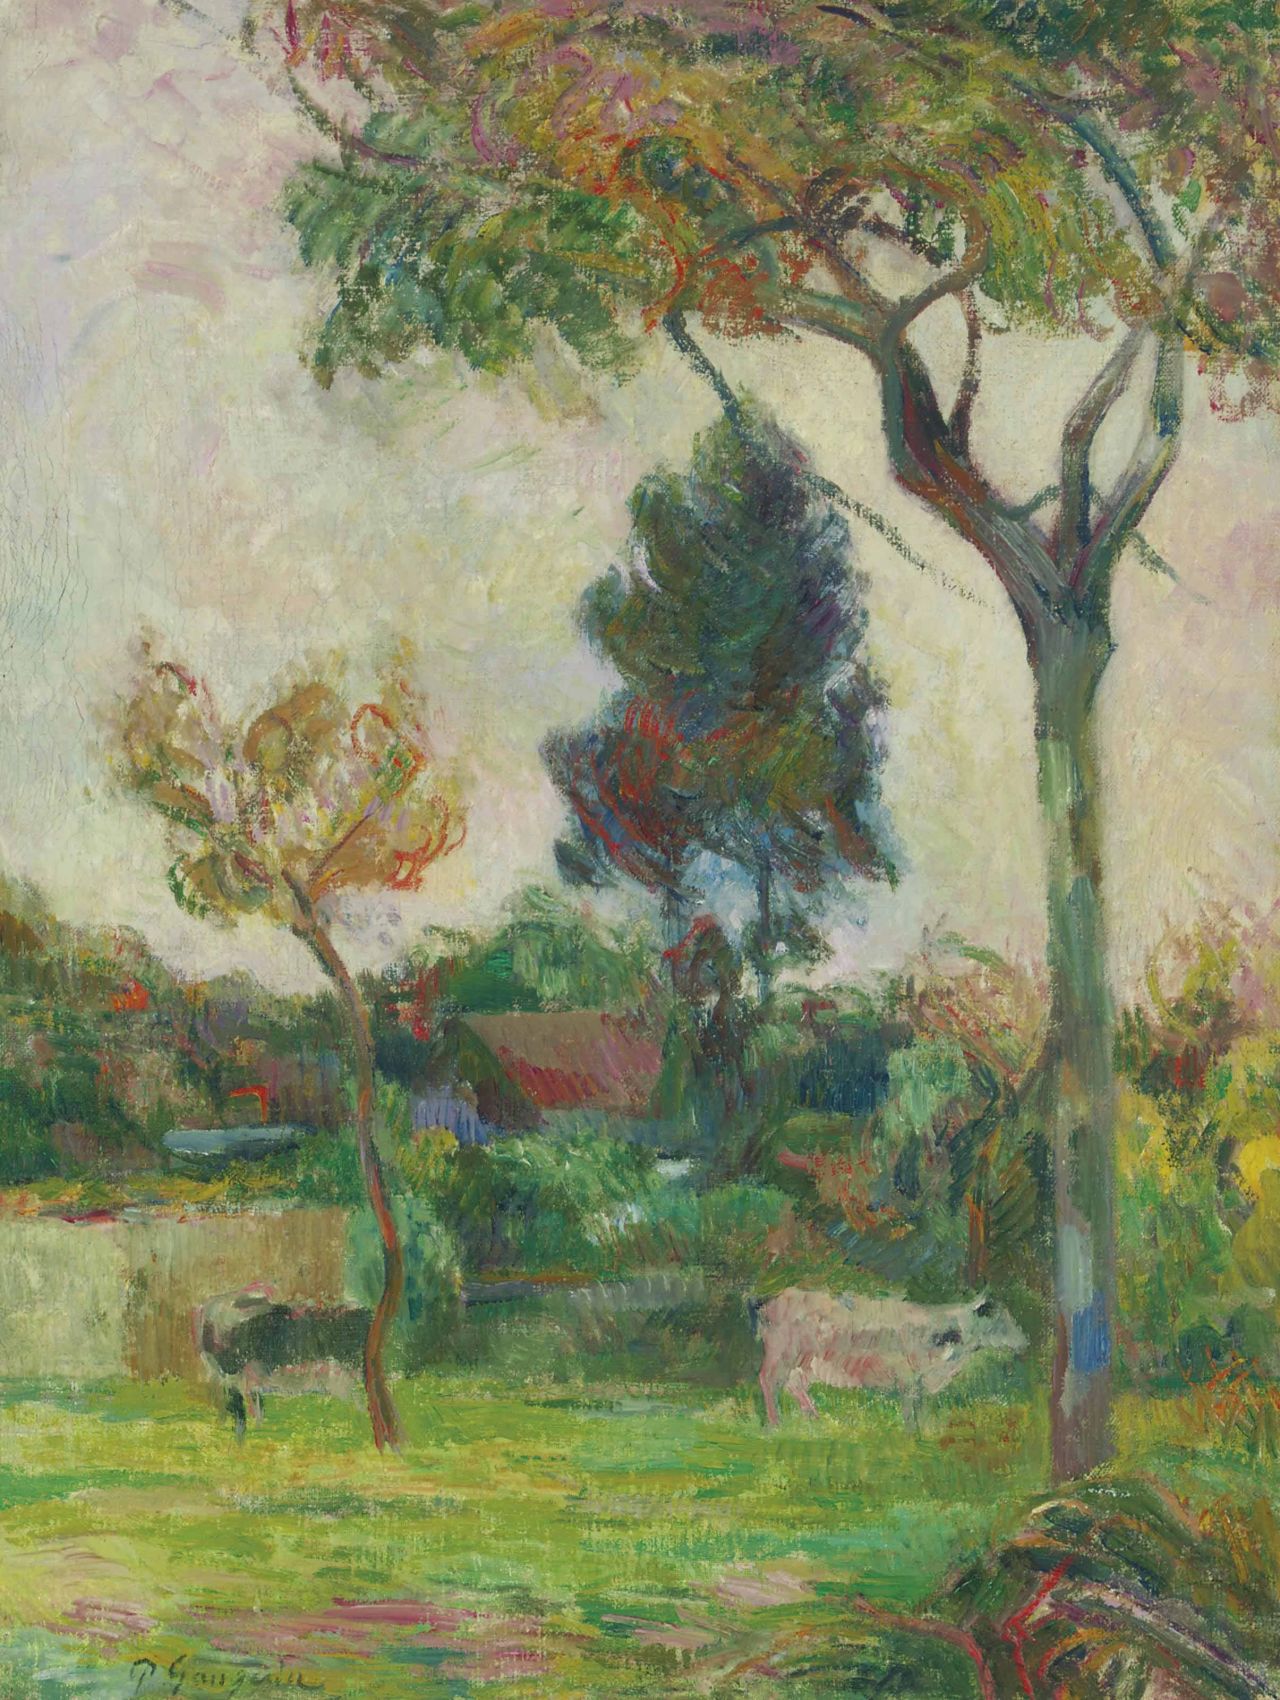 Paul Gauguin's 1884 painting "Deux vaches au pré."